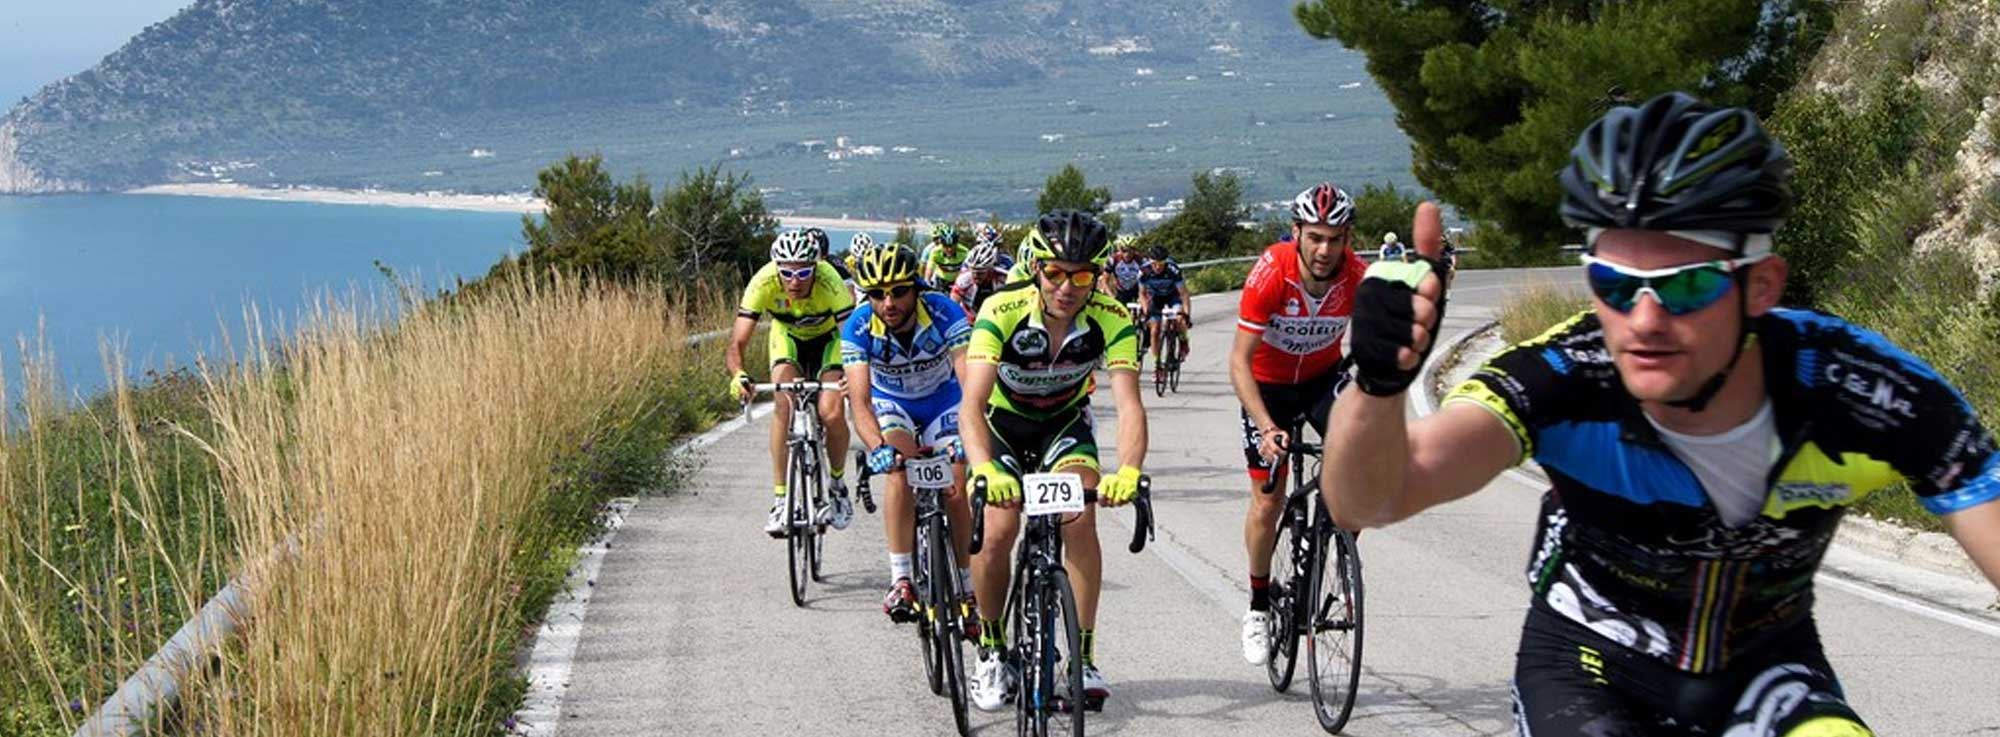 Alberobello - Peschici: Giro d'Italia